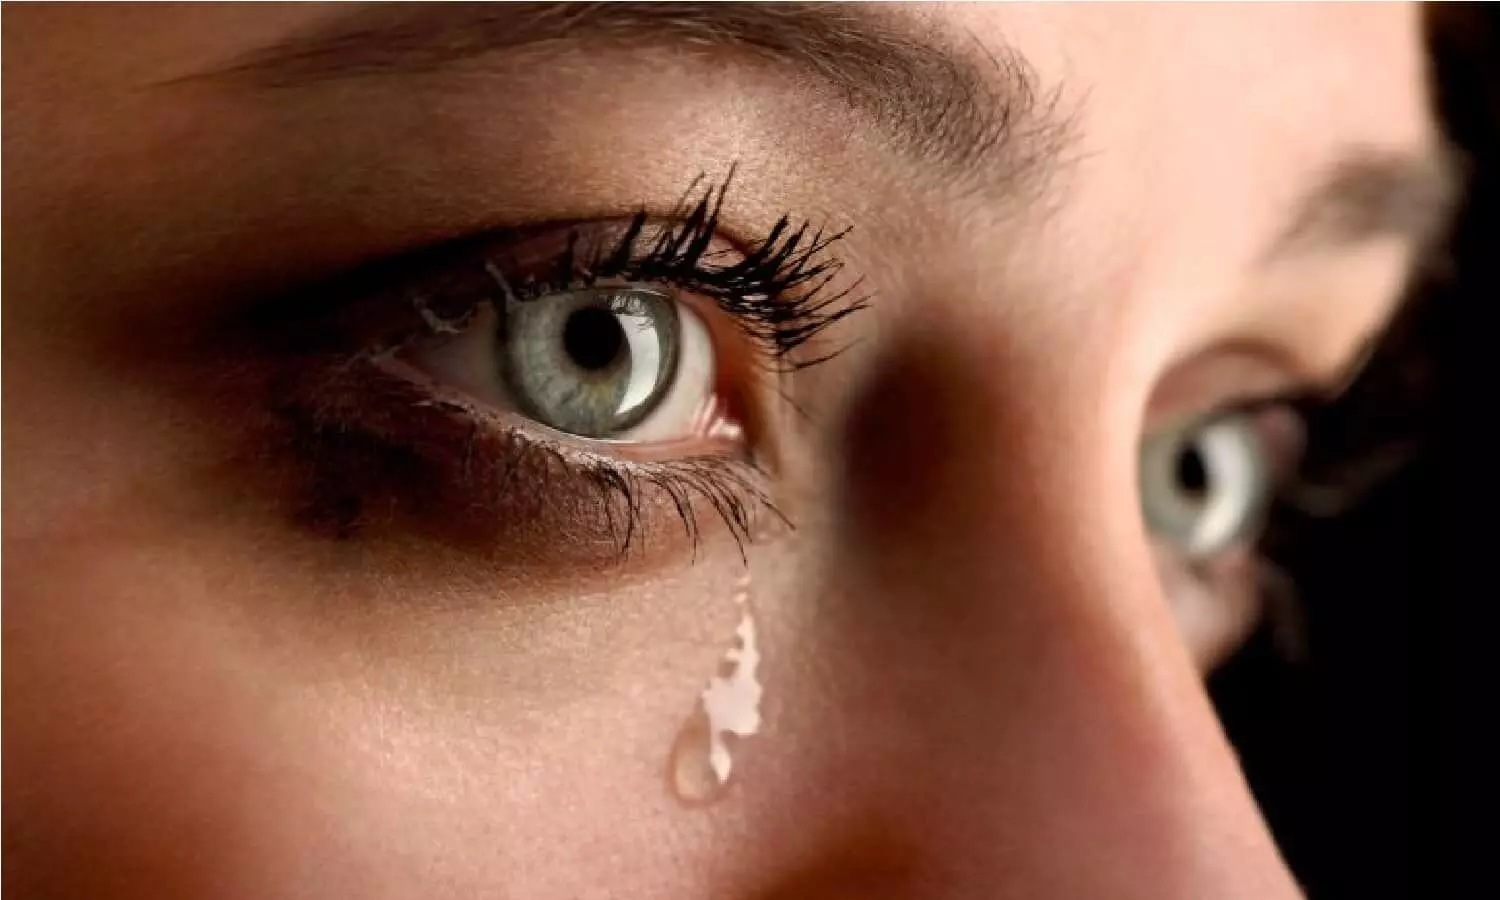 सवाल: आंखो से निकलने वाले आंसू नमकीन क्यों होते है?